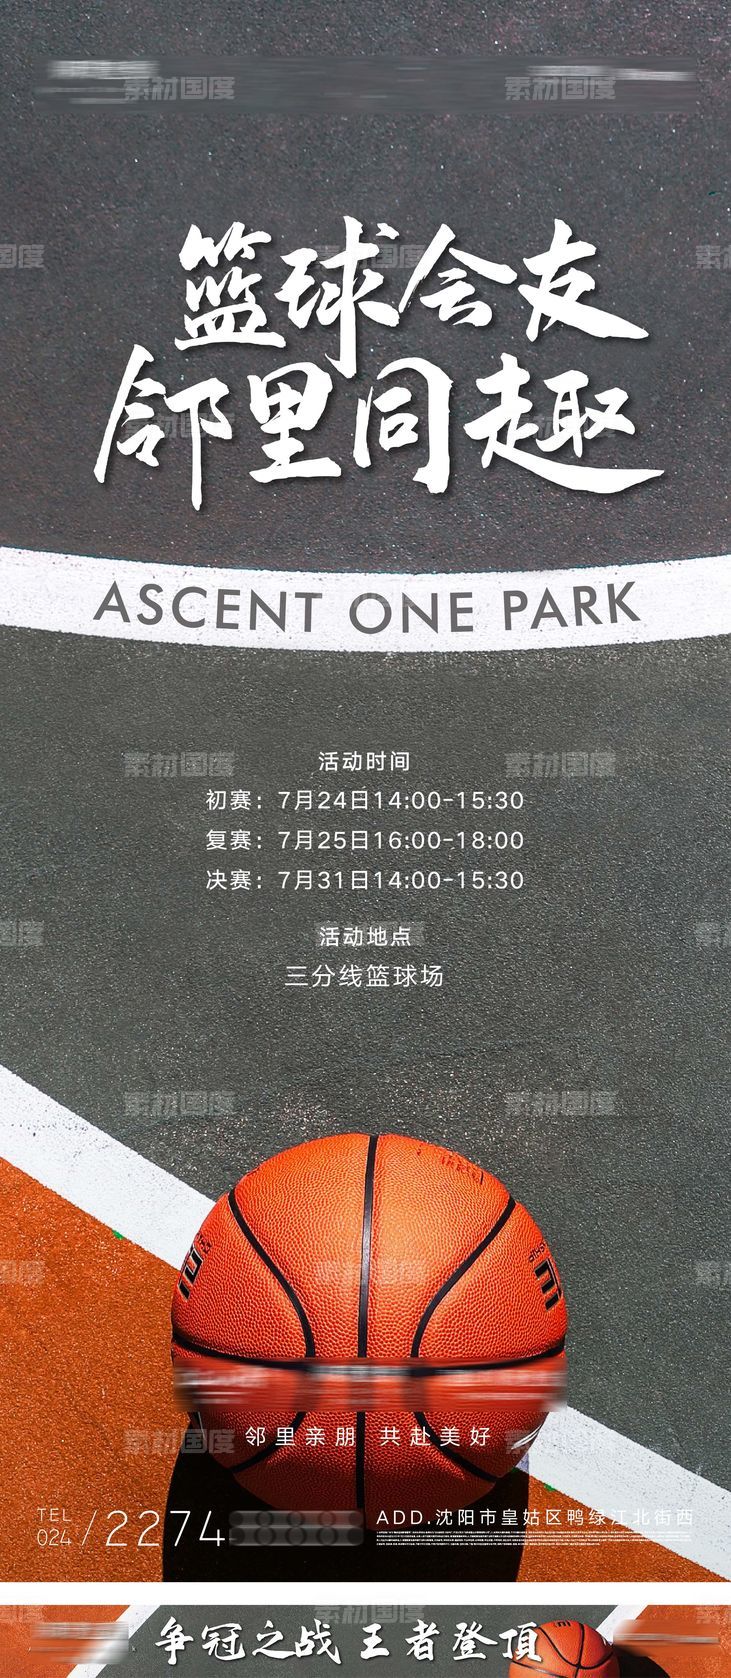 邻里社区篮球运动比赛友谊赛海报